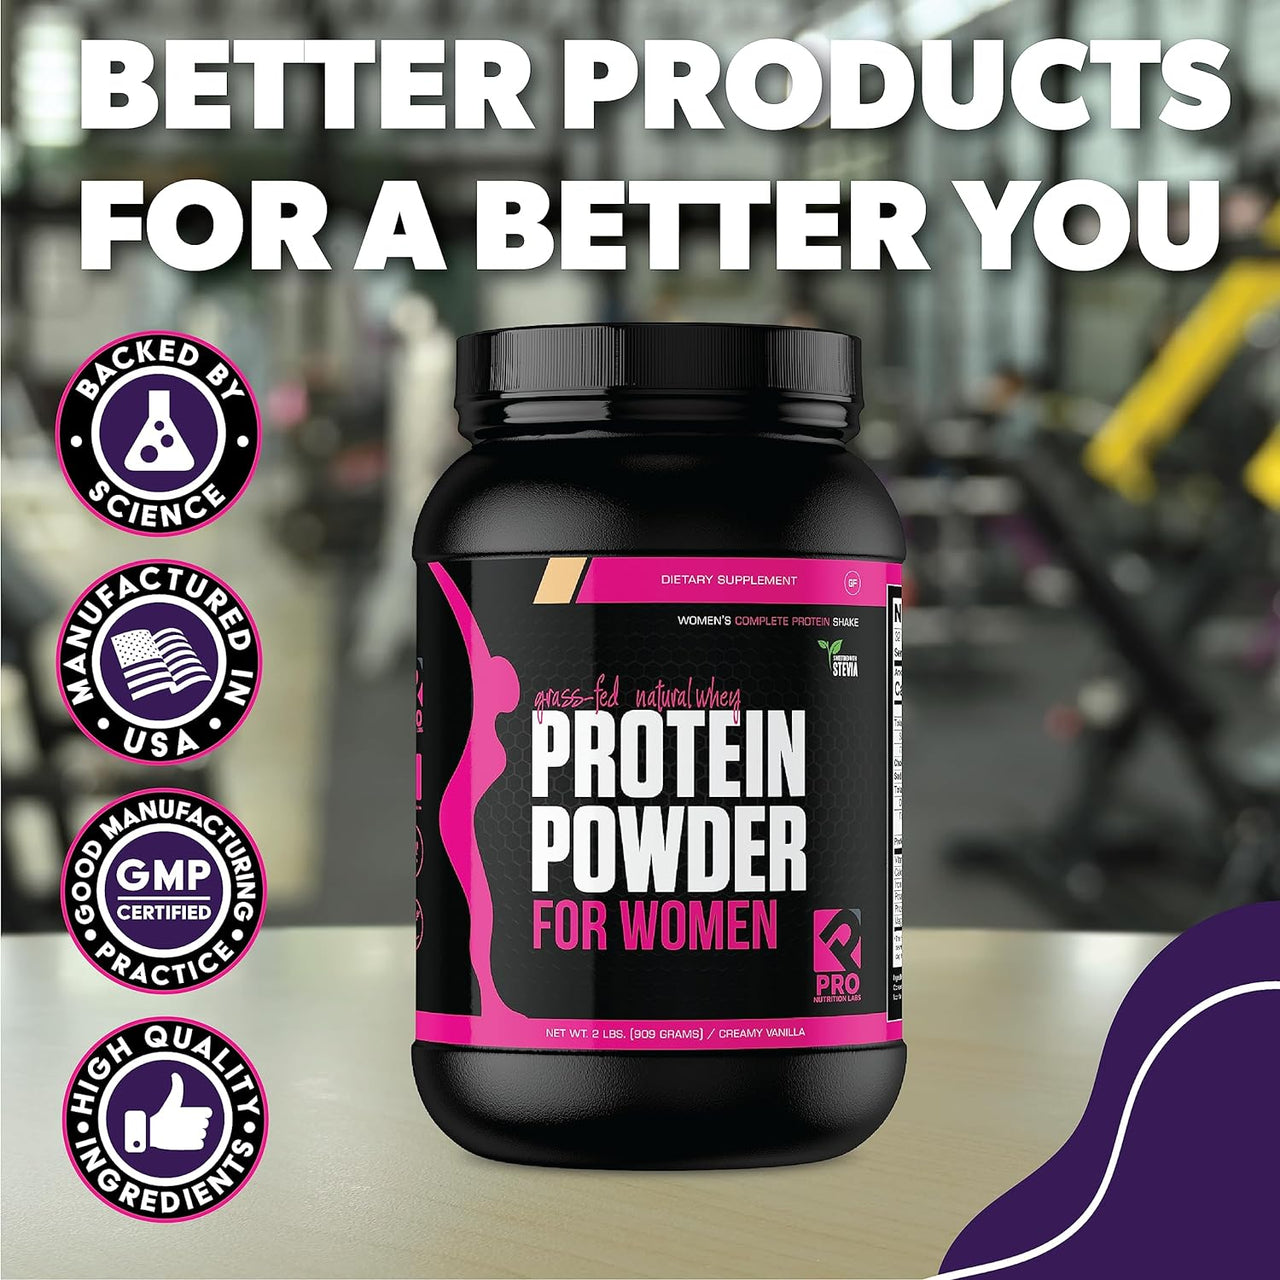 Protein Powder for Women